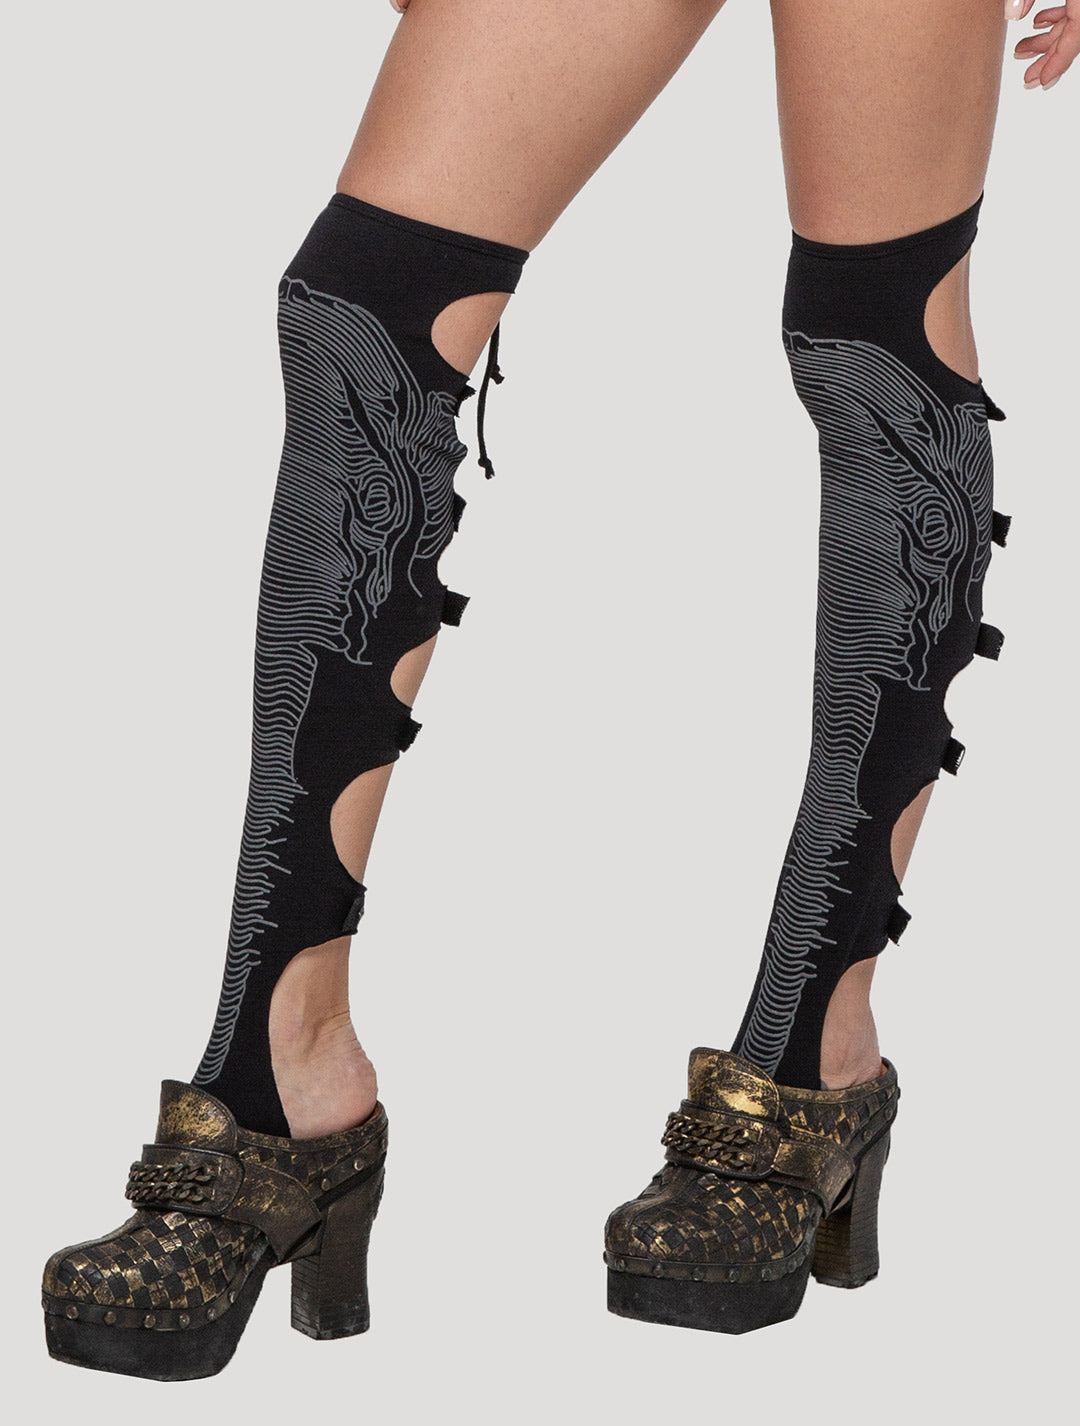 Black 'Elephant' Organic Cotton Lycra Leg Warmers - Psylo Fashion